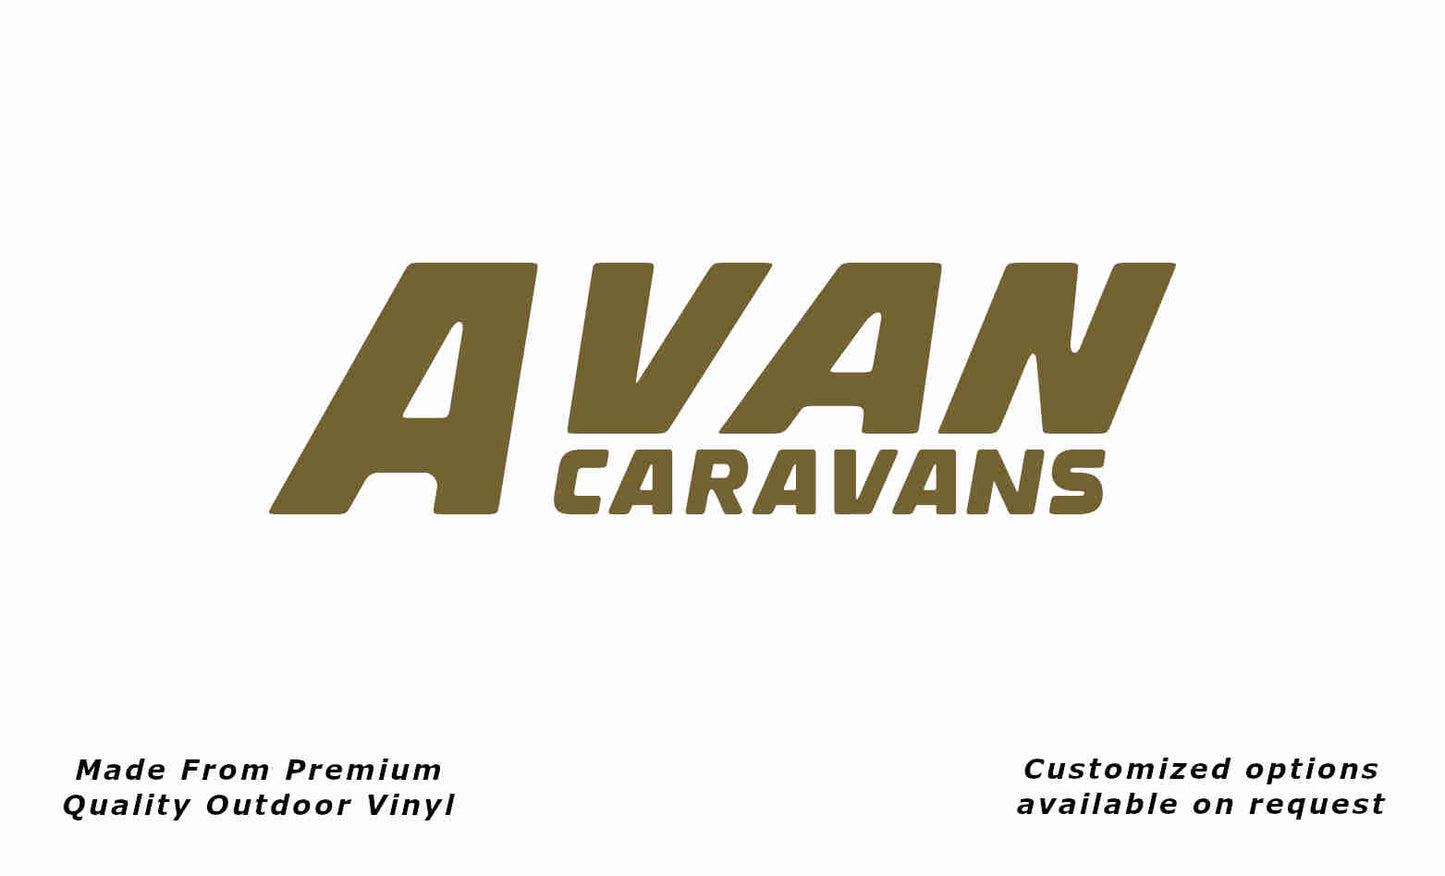 Avan caravans replacement vinyl decal sticker in gold.